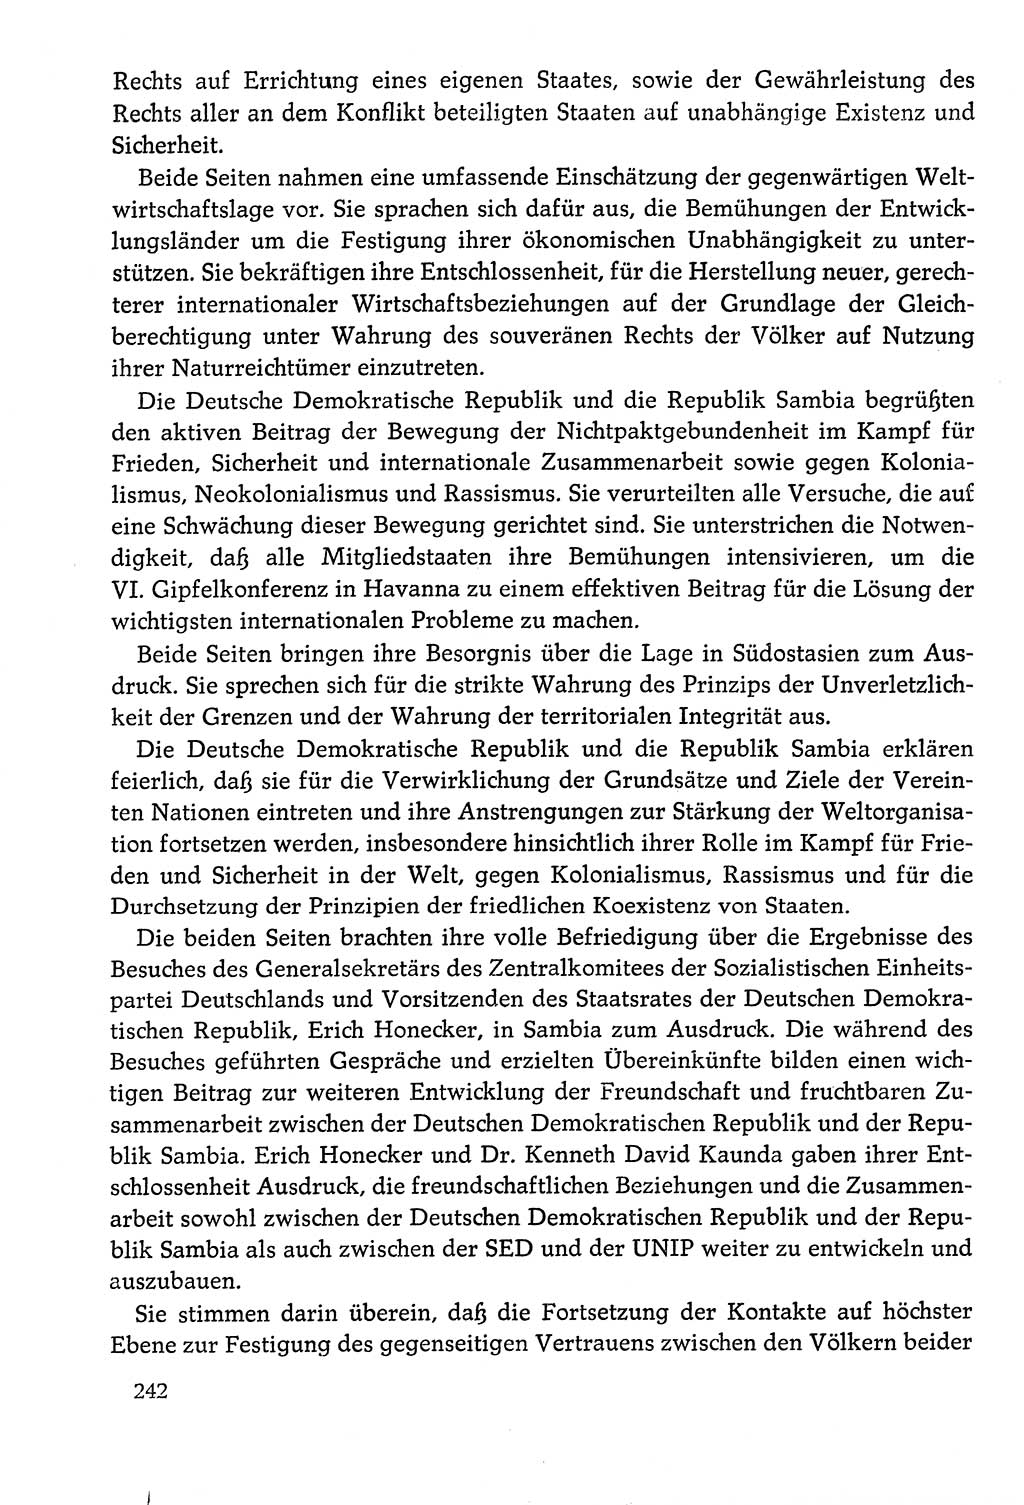 Dokumente der Sozialistischen Einheitspartei Deutschlands (SED) [Deutsche Demokratische Republik (DDR)] 1978-1979, Seite 242 (Dok. SED DDR 1978-1979, S. 242)